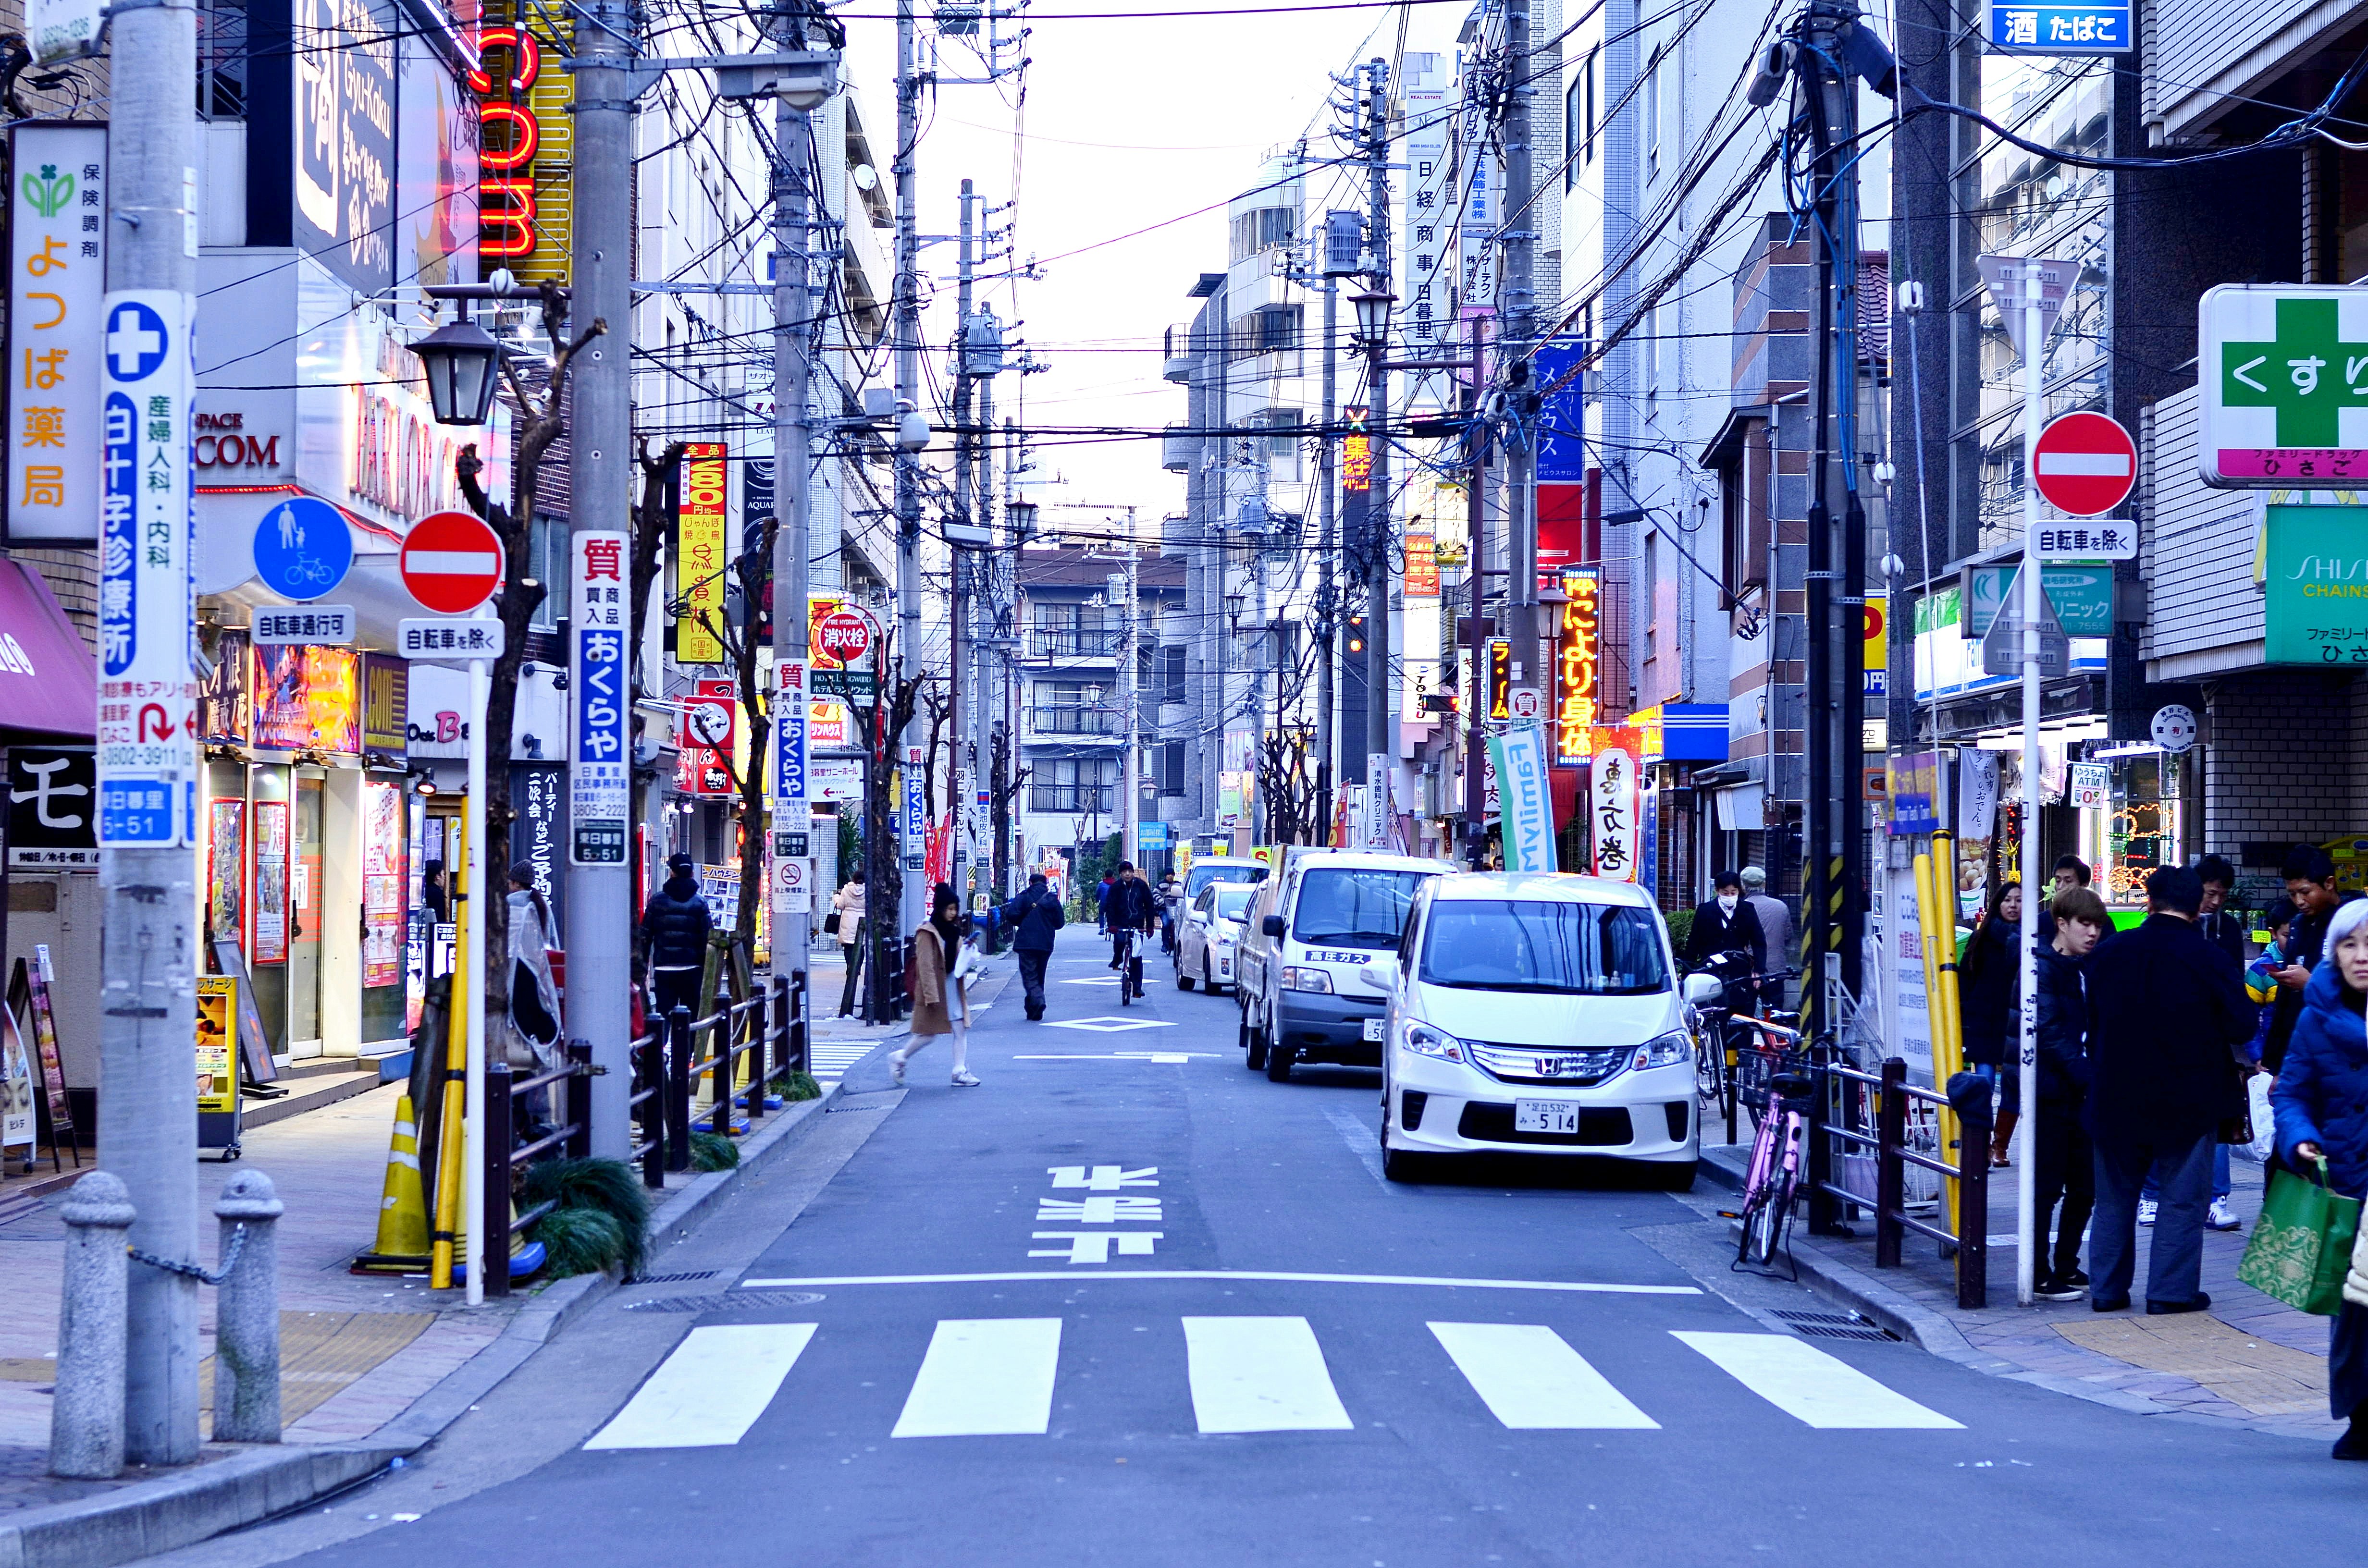 剛開始學習日語的時候，越是學習也越來越對日本的日常感興趣。很期待有朝一日可以踏上日本國土來旅遊。第一次旅遊去了沖繩、第二次去了東京，在當地和計程車司機、飯店、超市店員成功溝通，就是日語學習最大的成就感。